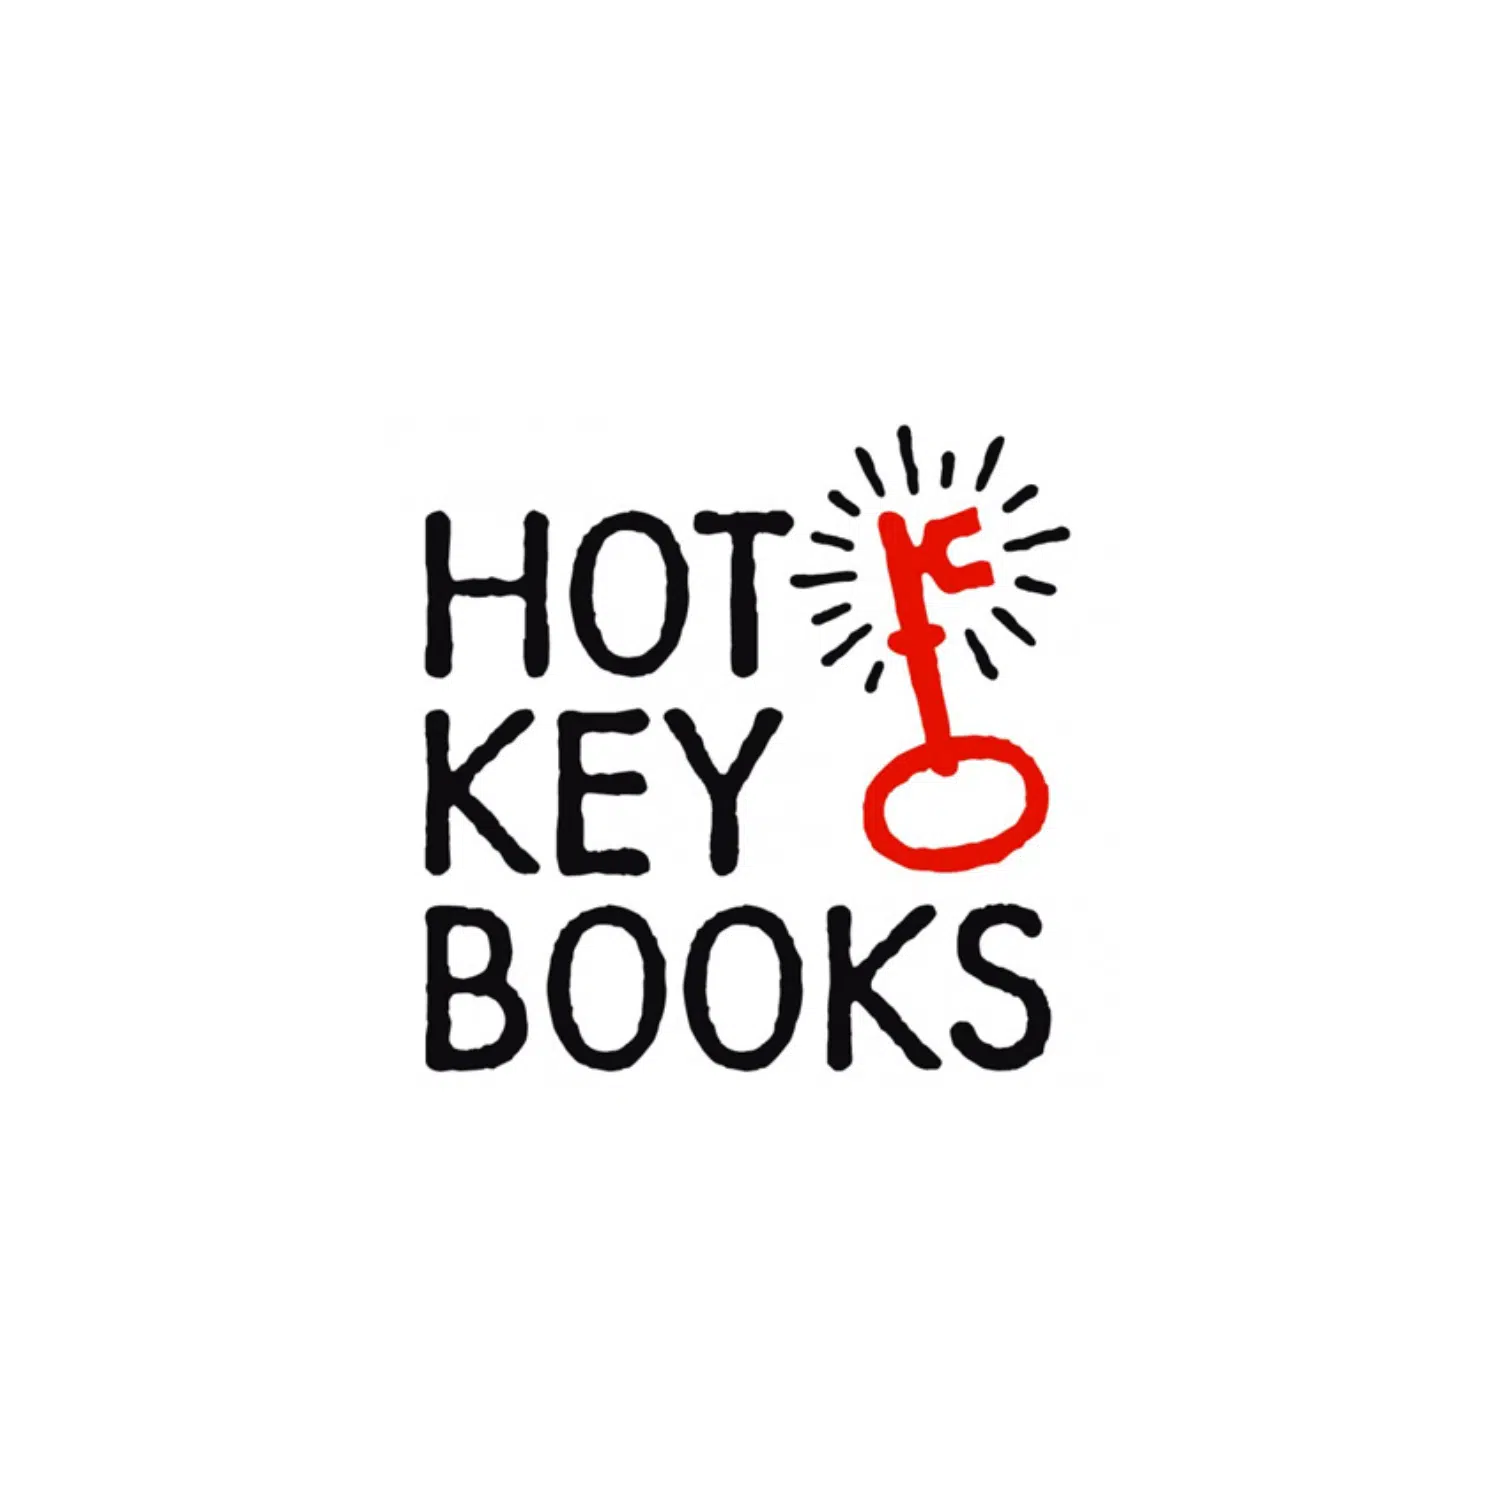 Hot Key Books